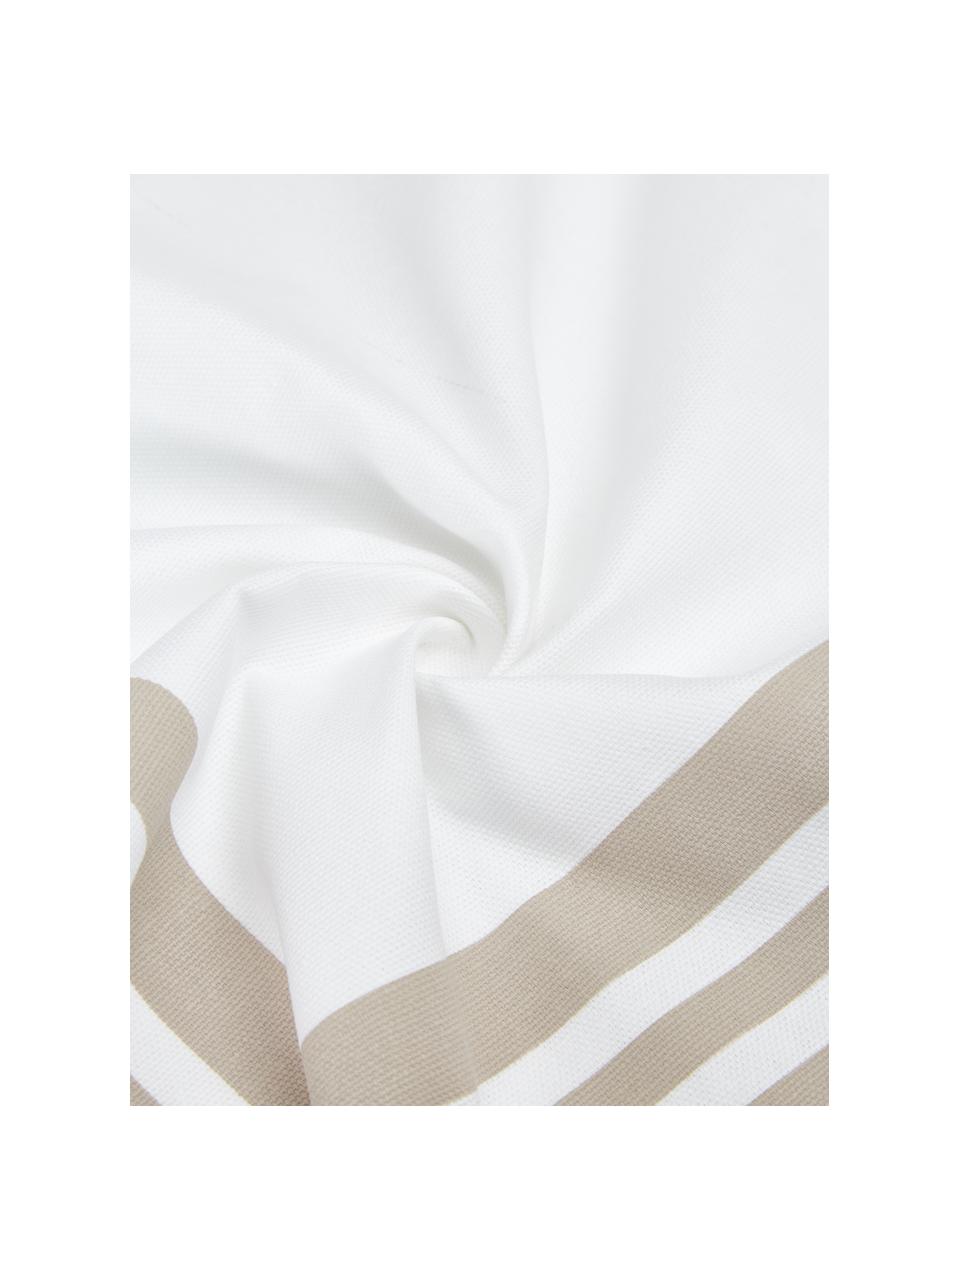 Federa arredo in cotone taupe/bianco con motivo grafico Zahra, 100% cotone, Bianco, beige, Larg. 45 x Lung. 45 cm